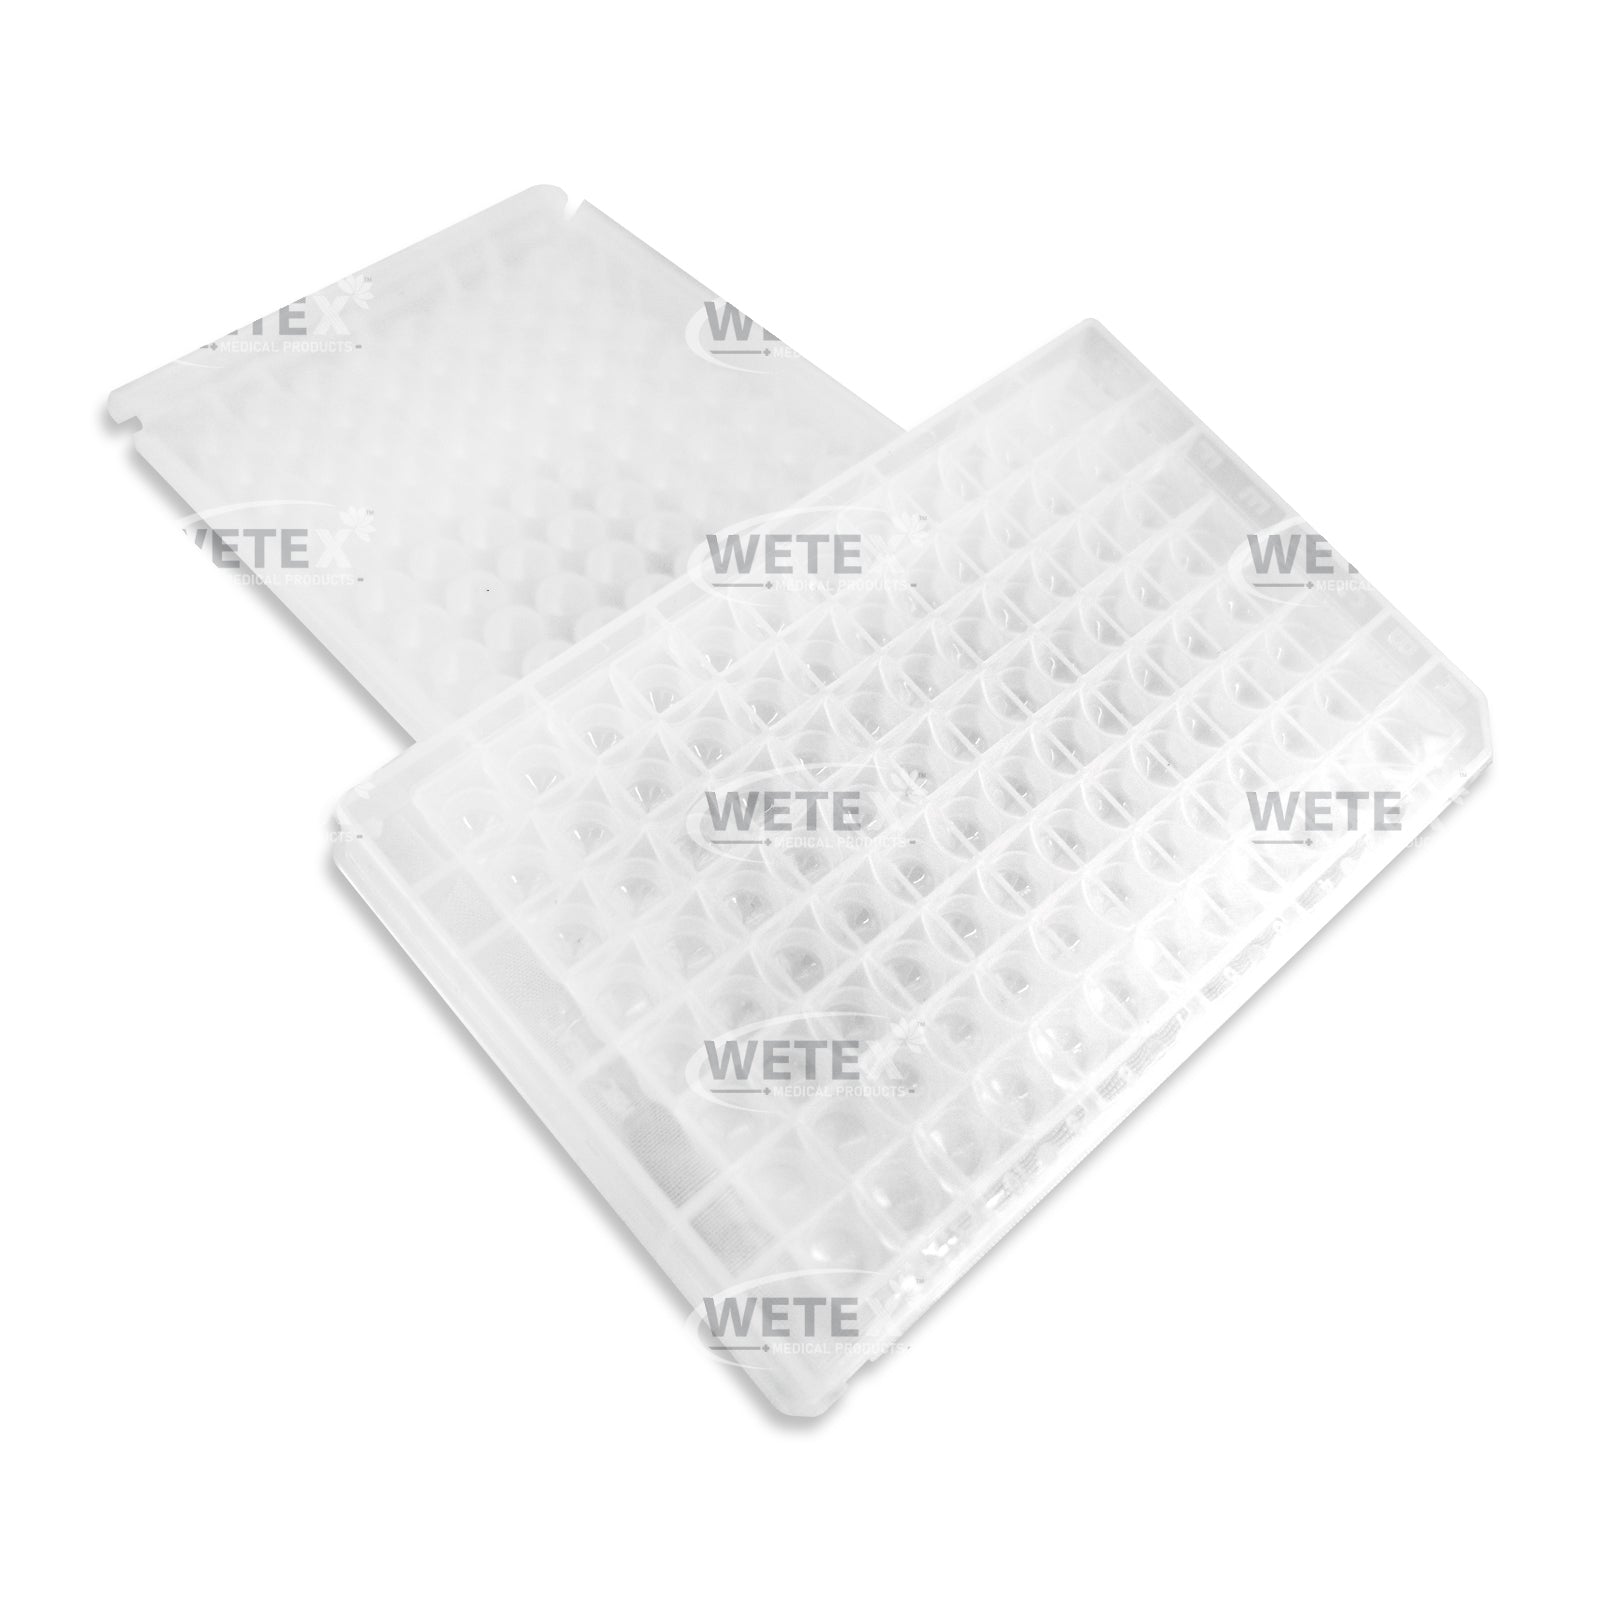 0.5mL Deep Well 96 PCR Plate, Sterile, V-Bottom